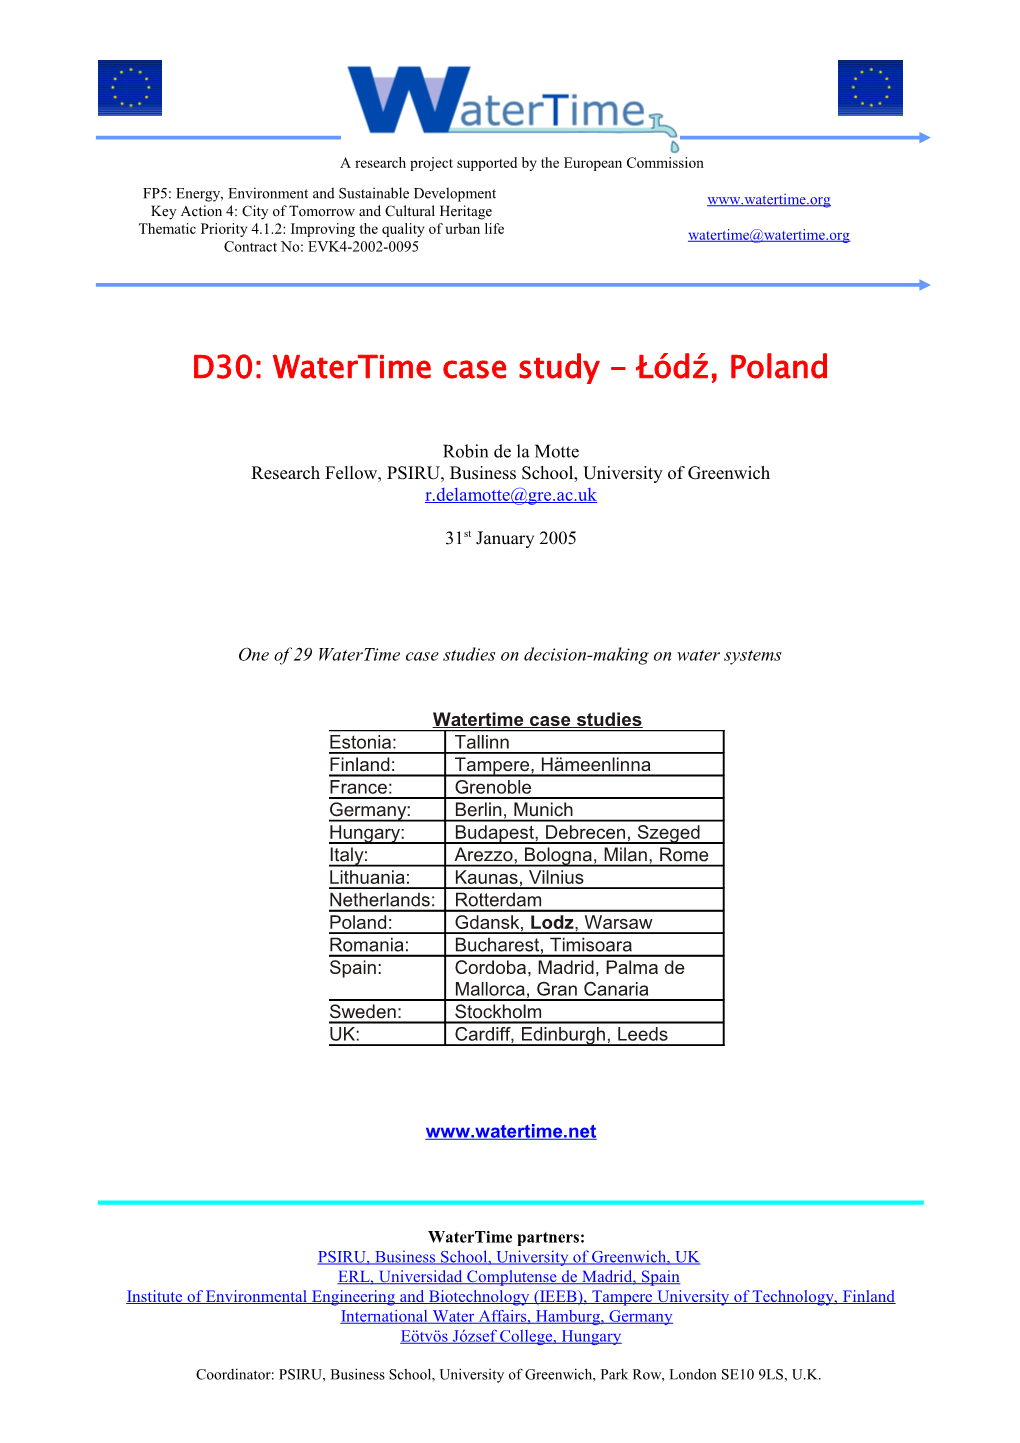 D30: Watertime Case Study - Łódź, Poland